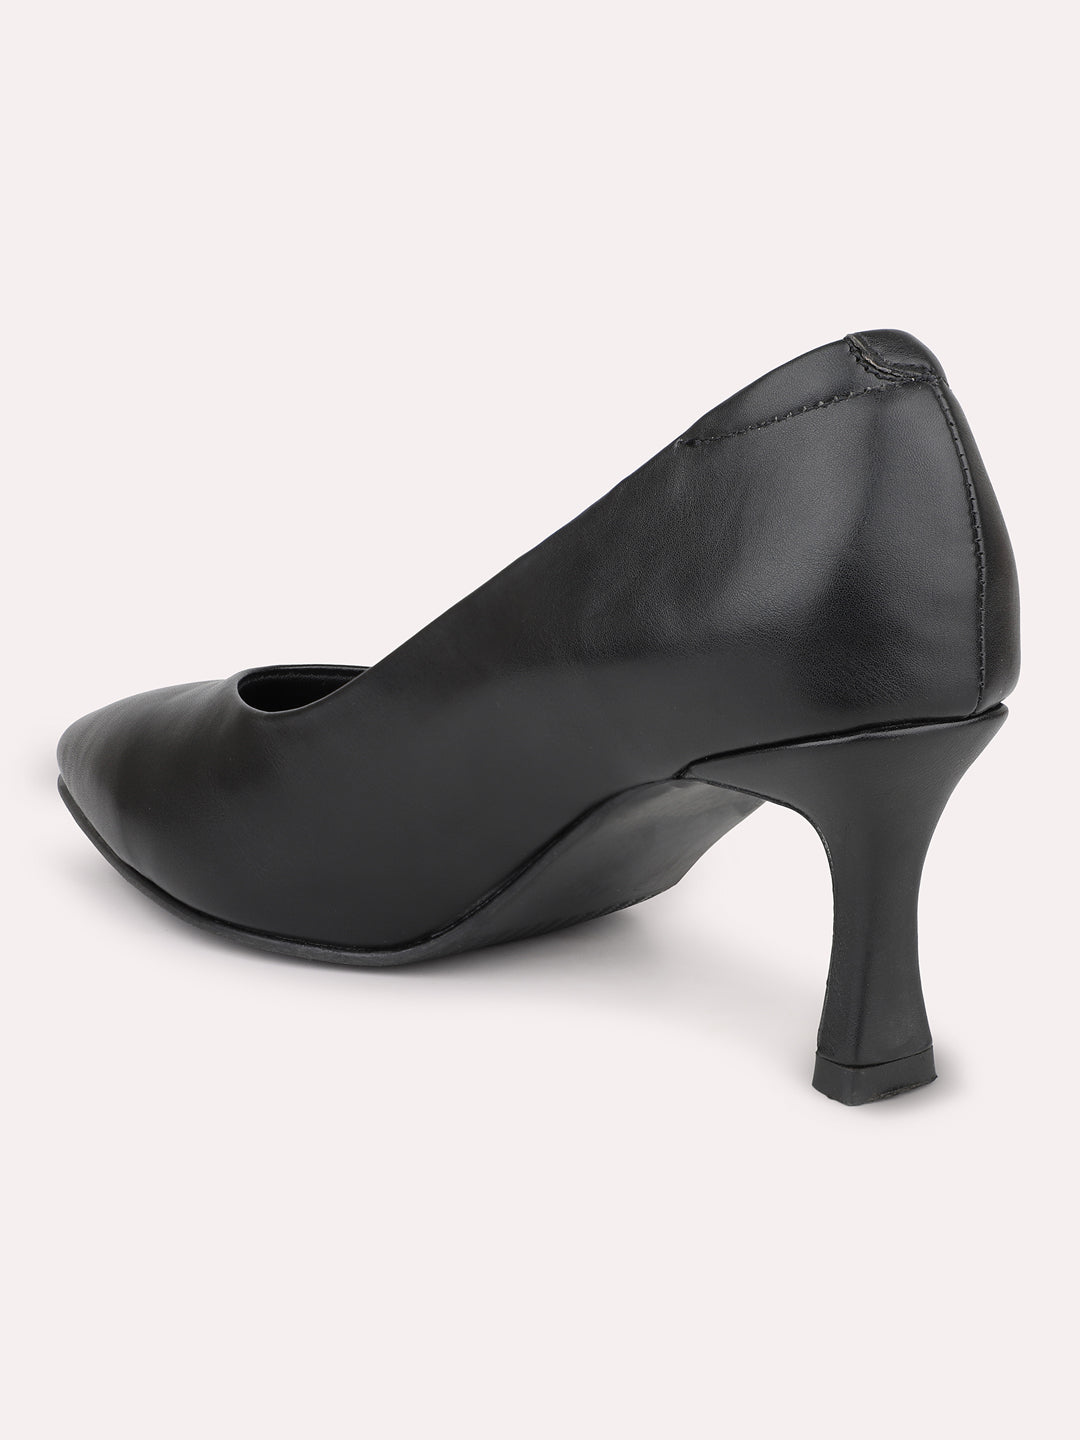 Women Black Pointed-Toe Slim Heel Pumps